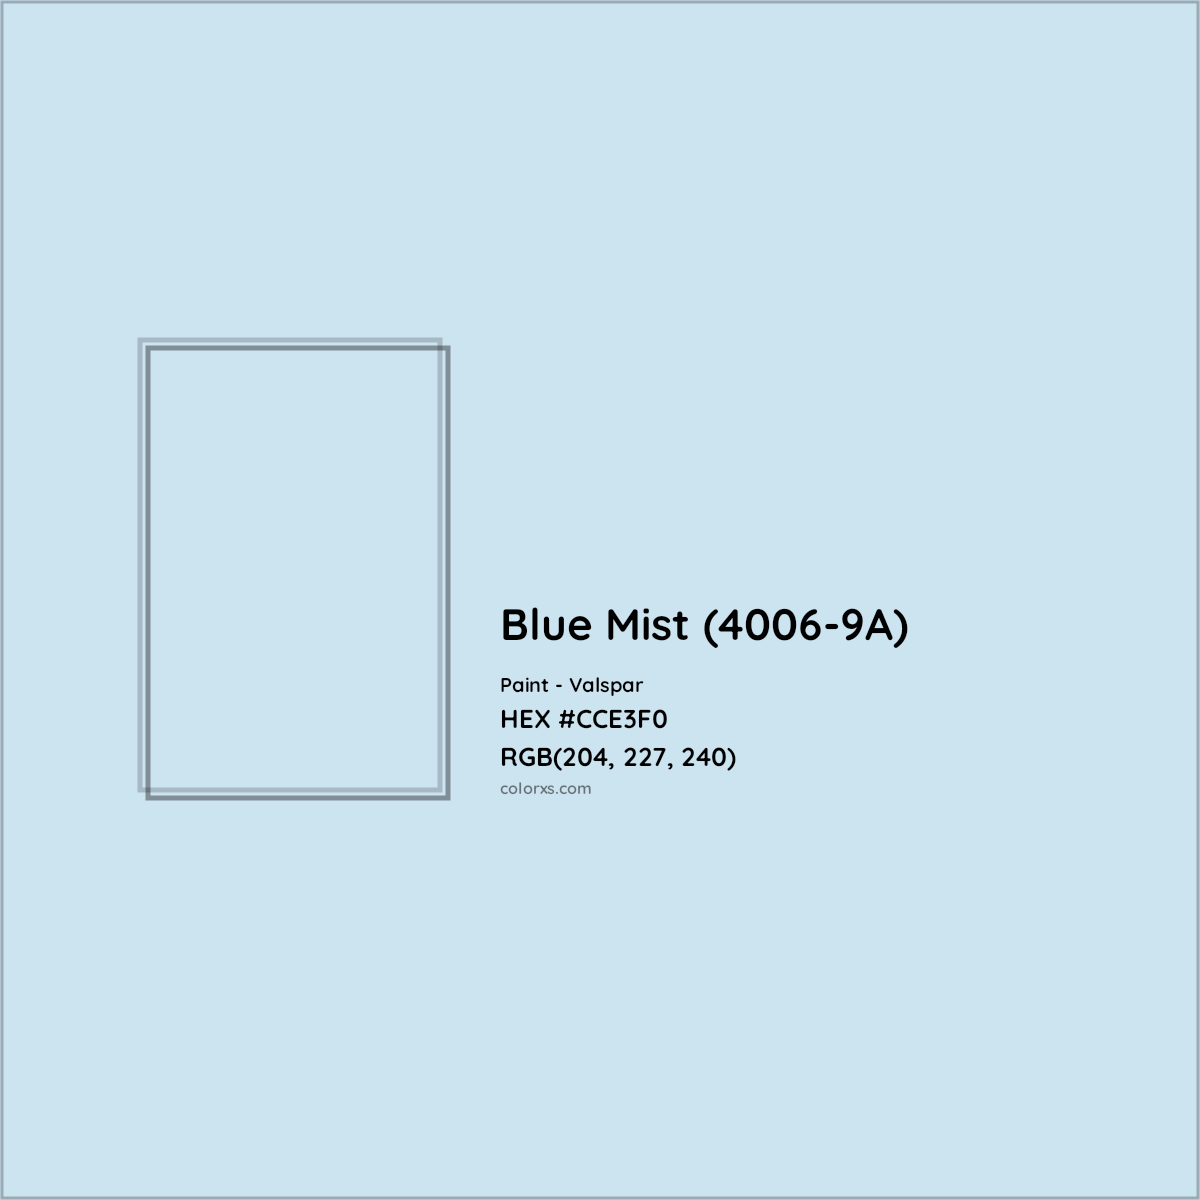 HEX #CCE3F0 Blue Mist (4006-9A) Paint Valspar - Color Code